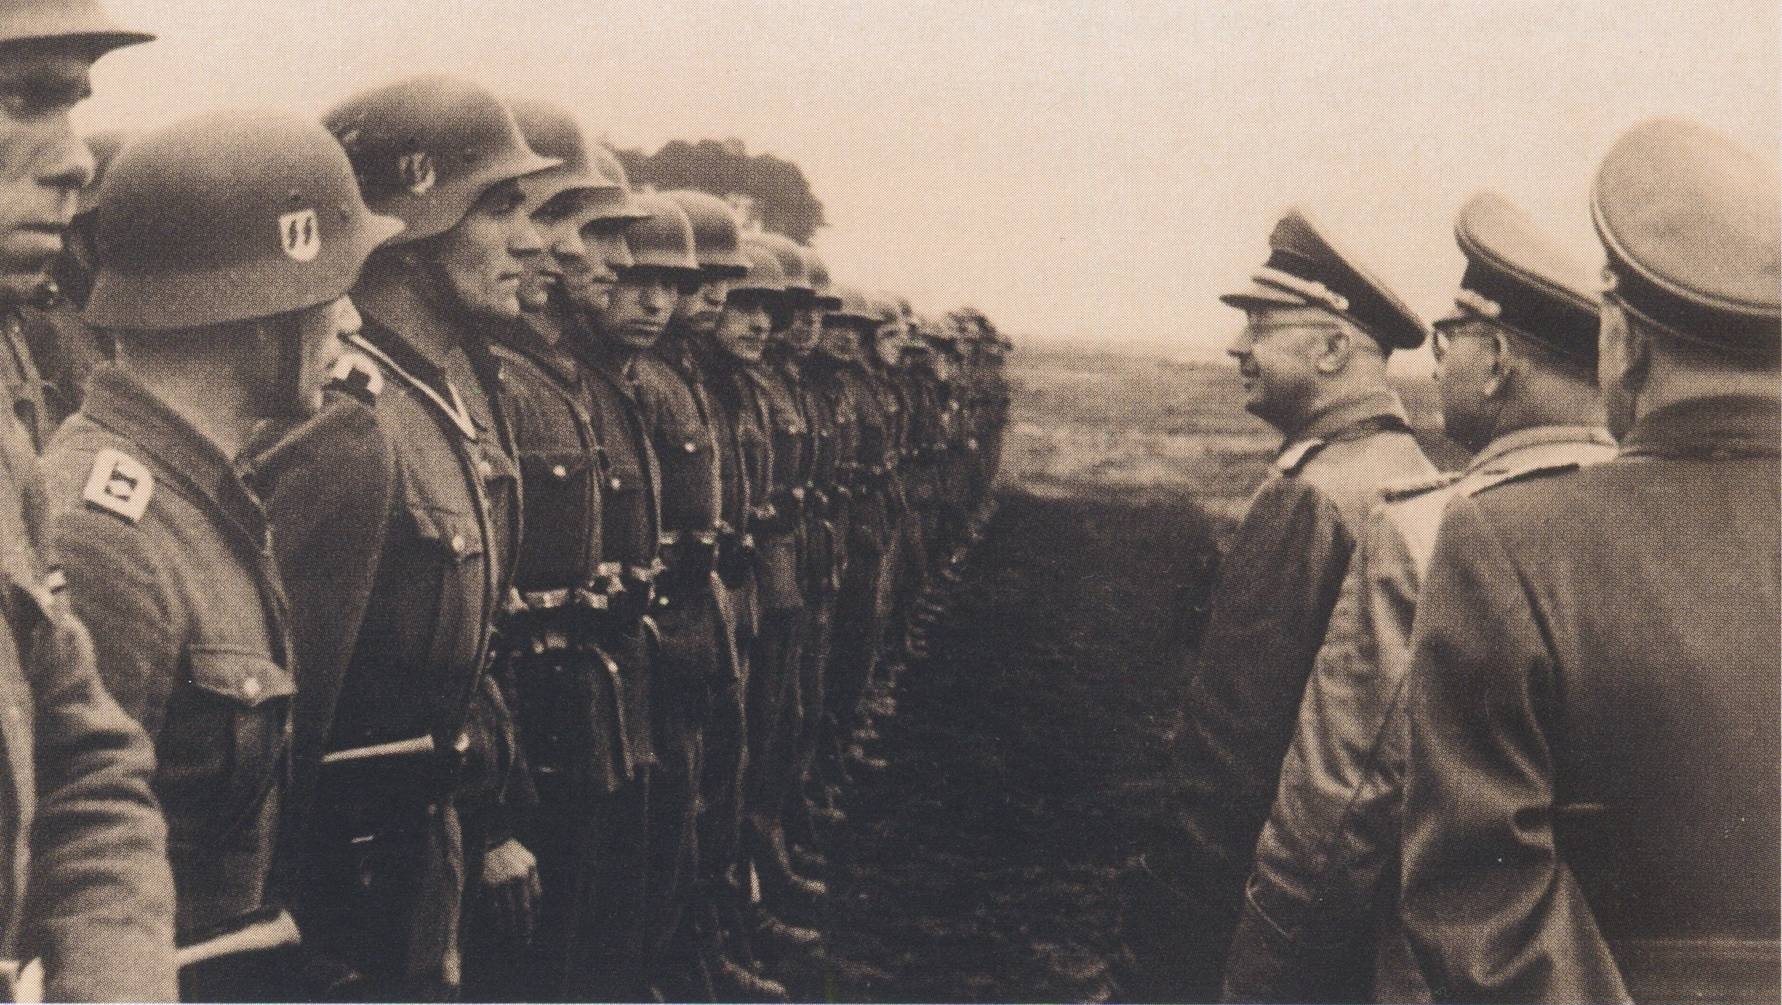 Гиммлер в дивизии СС «Галичина» (организация, деятельность которой запрещена в РФ). 3 июня 1944 года